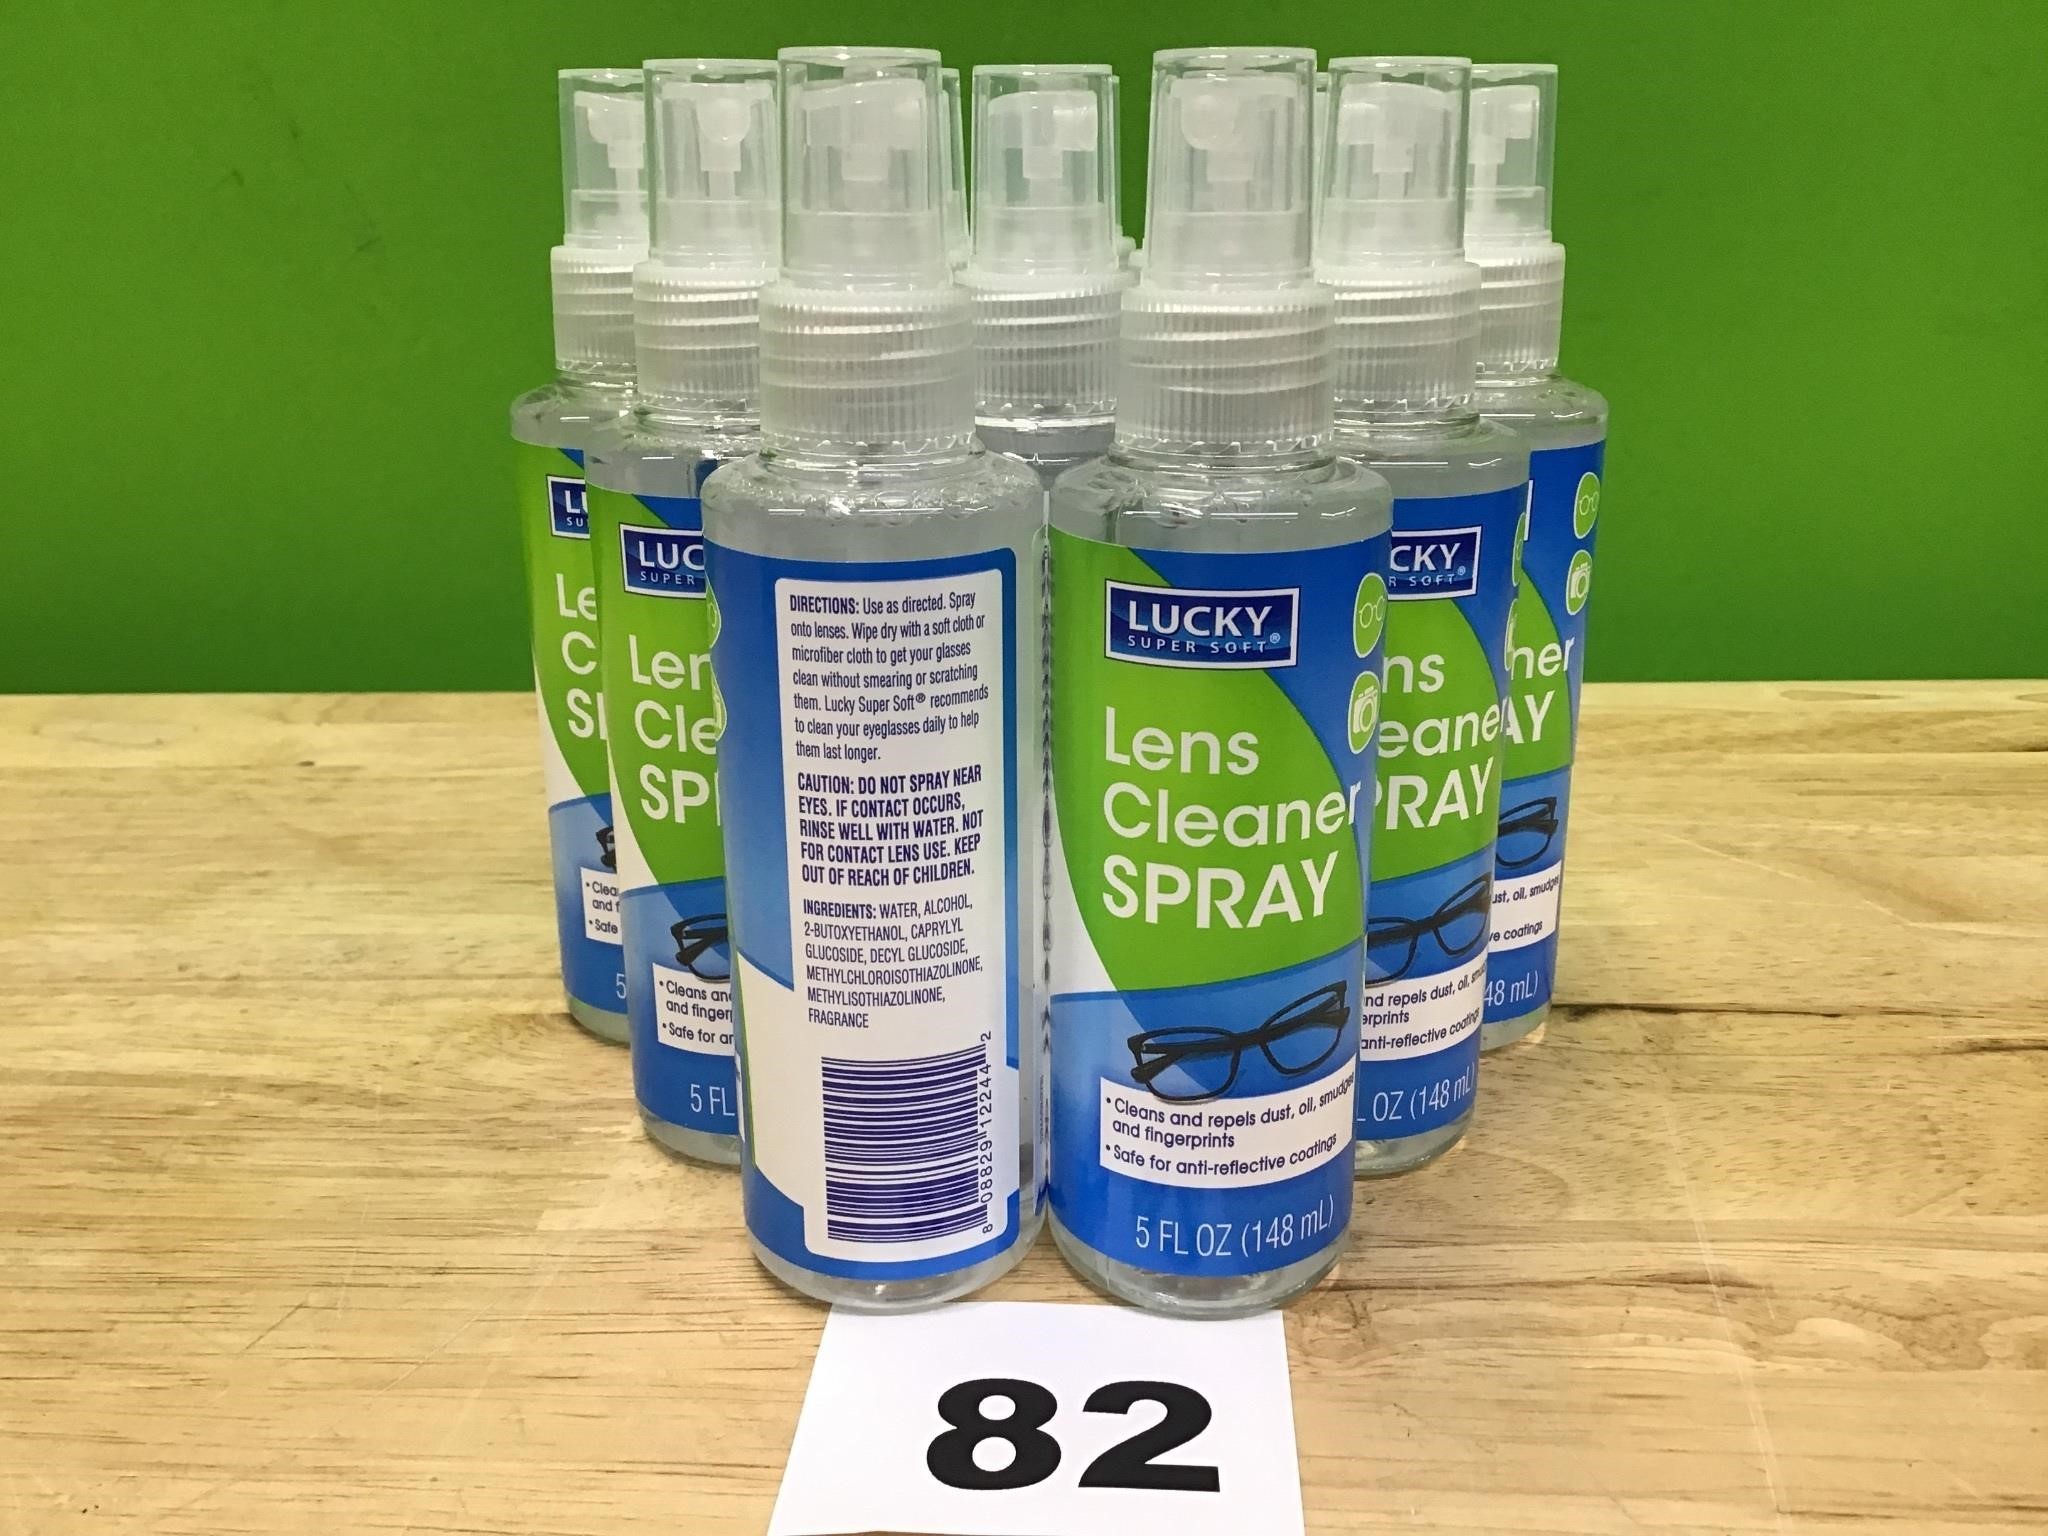 Lens Cleaner Spray lot of 12